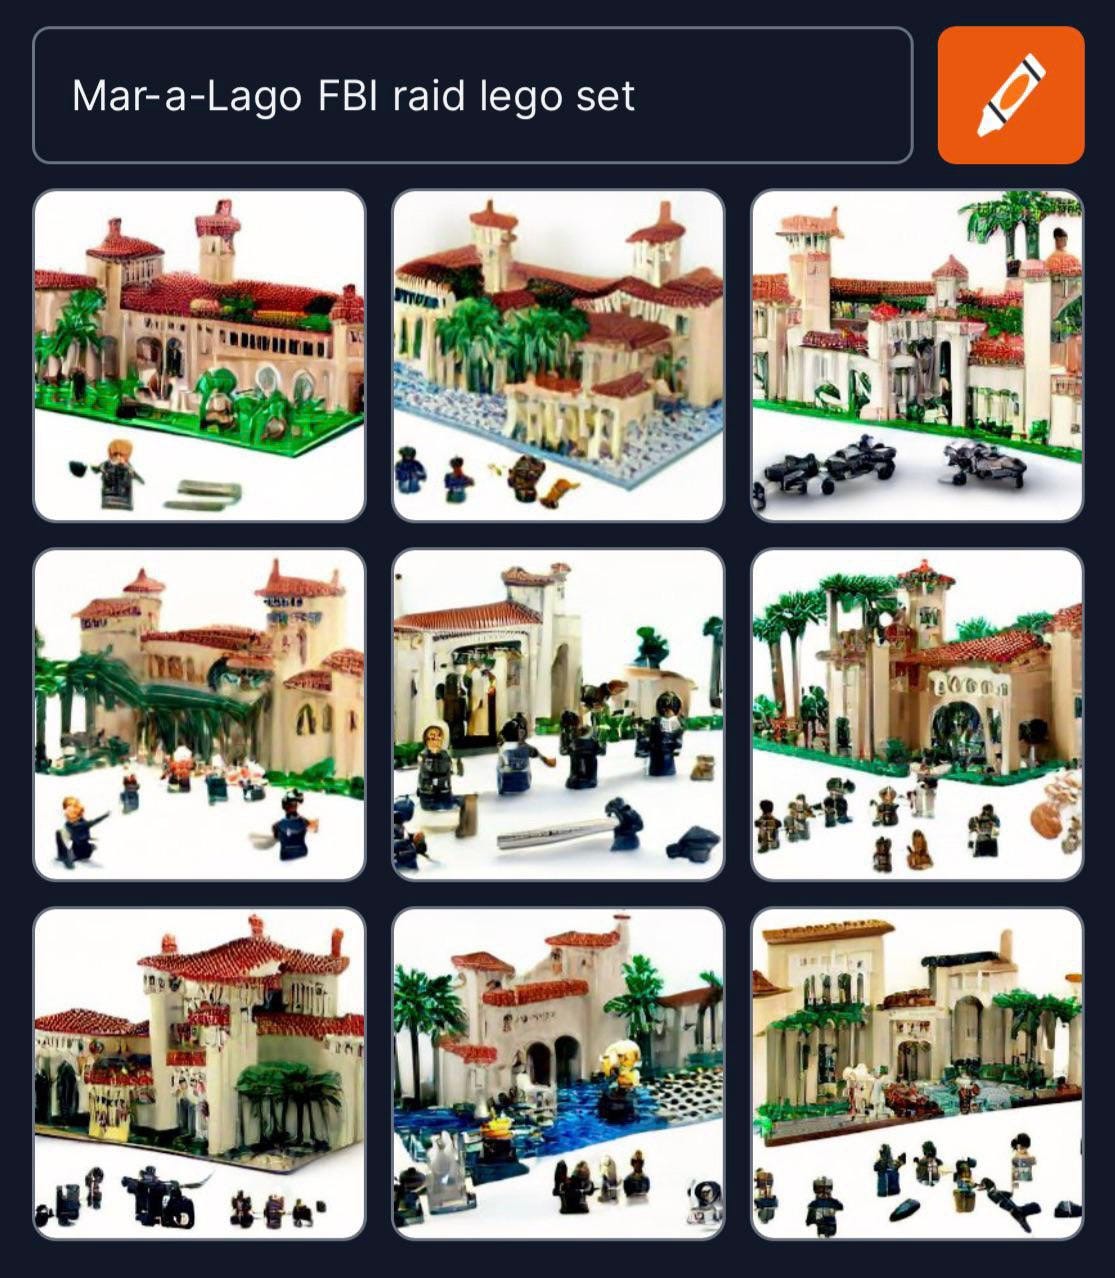 Image: An AI-created set of images of a Mar-a-Lago FBI raid Lego set